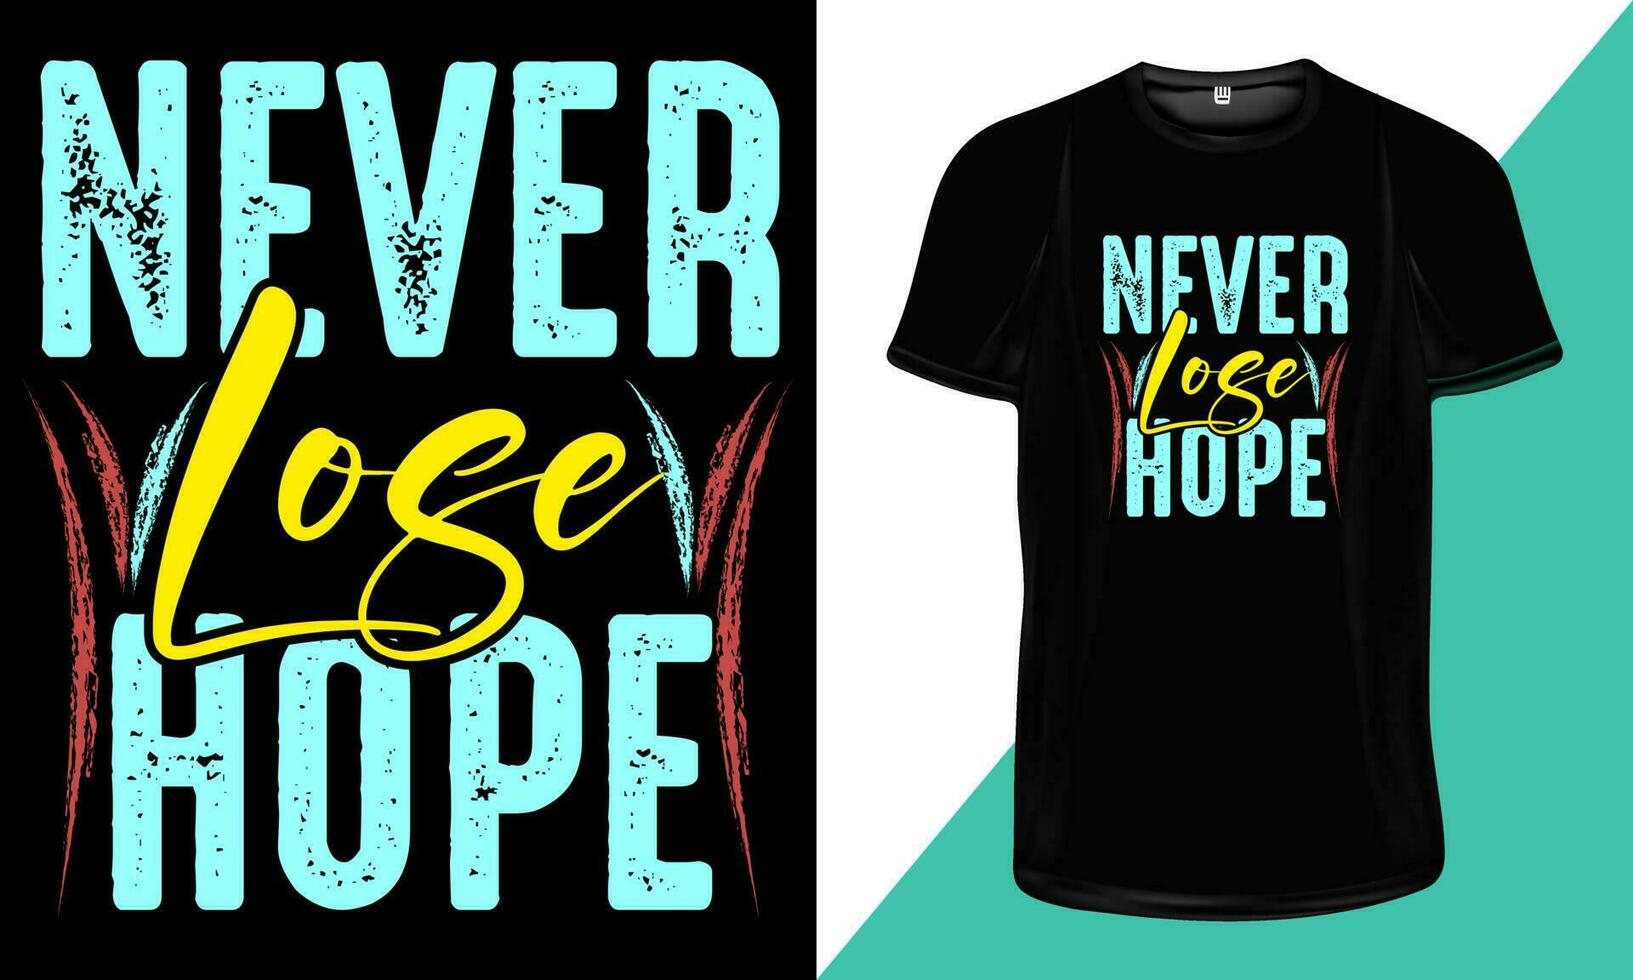 jamais perdre espoir- t chemise conception, de motivation T-shirt conception, inspirant typographie citations pour t- chemise conception impression vecteur